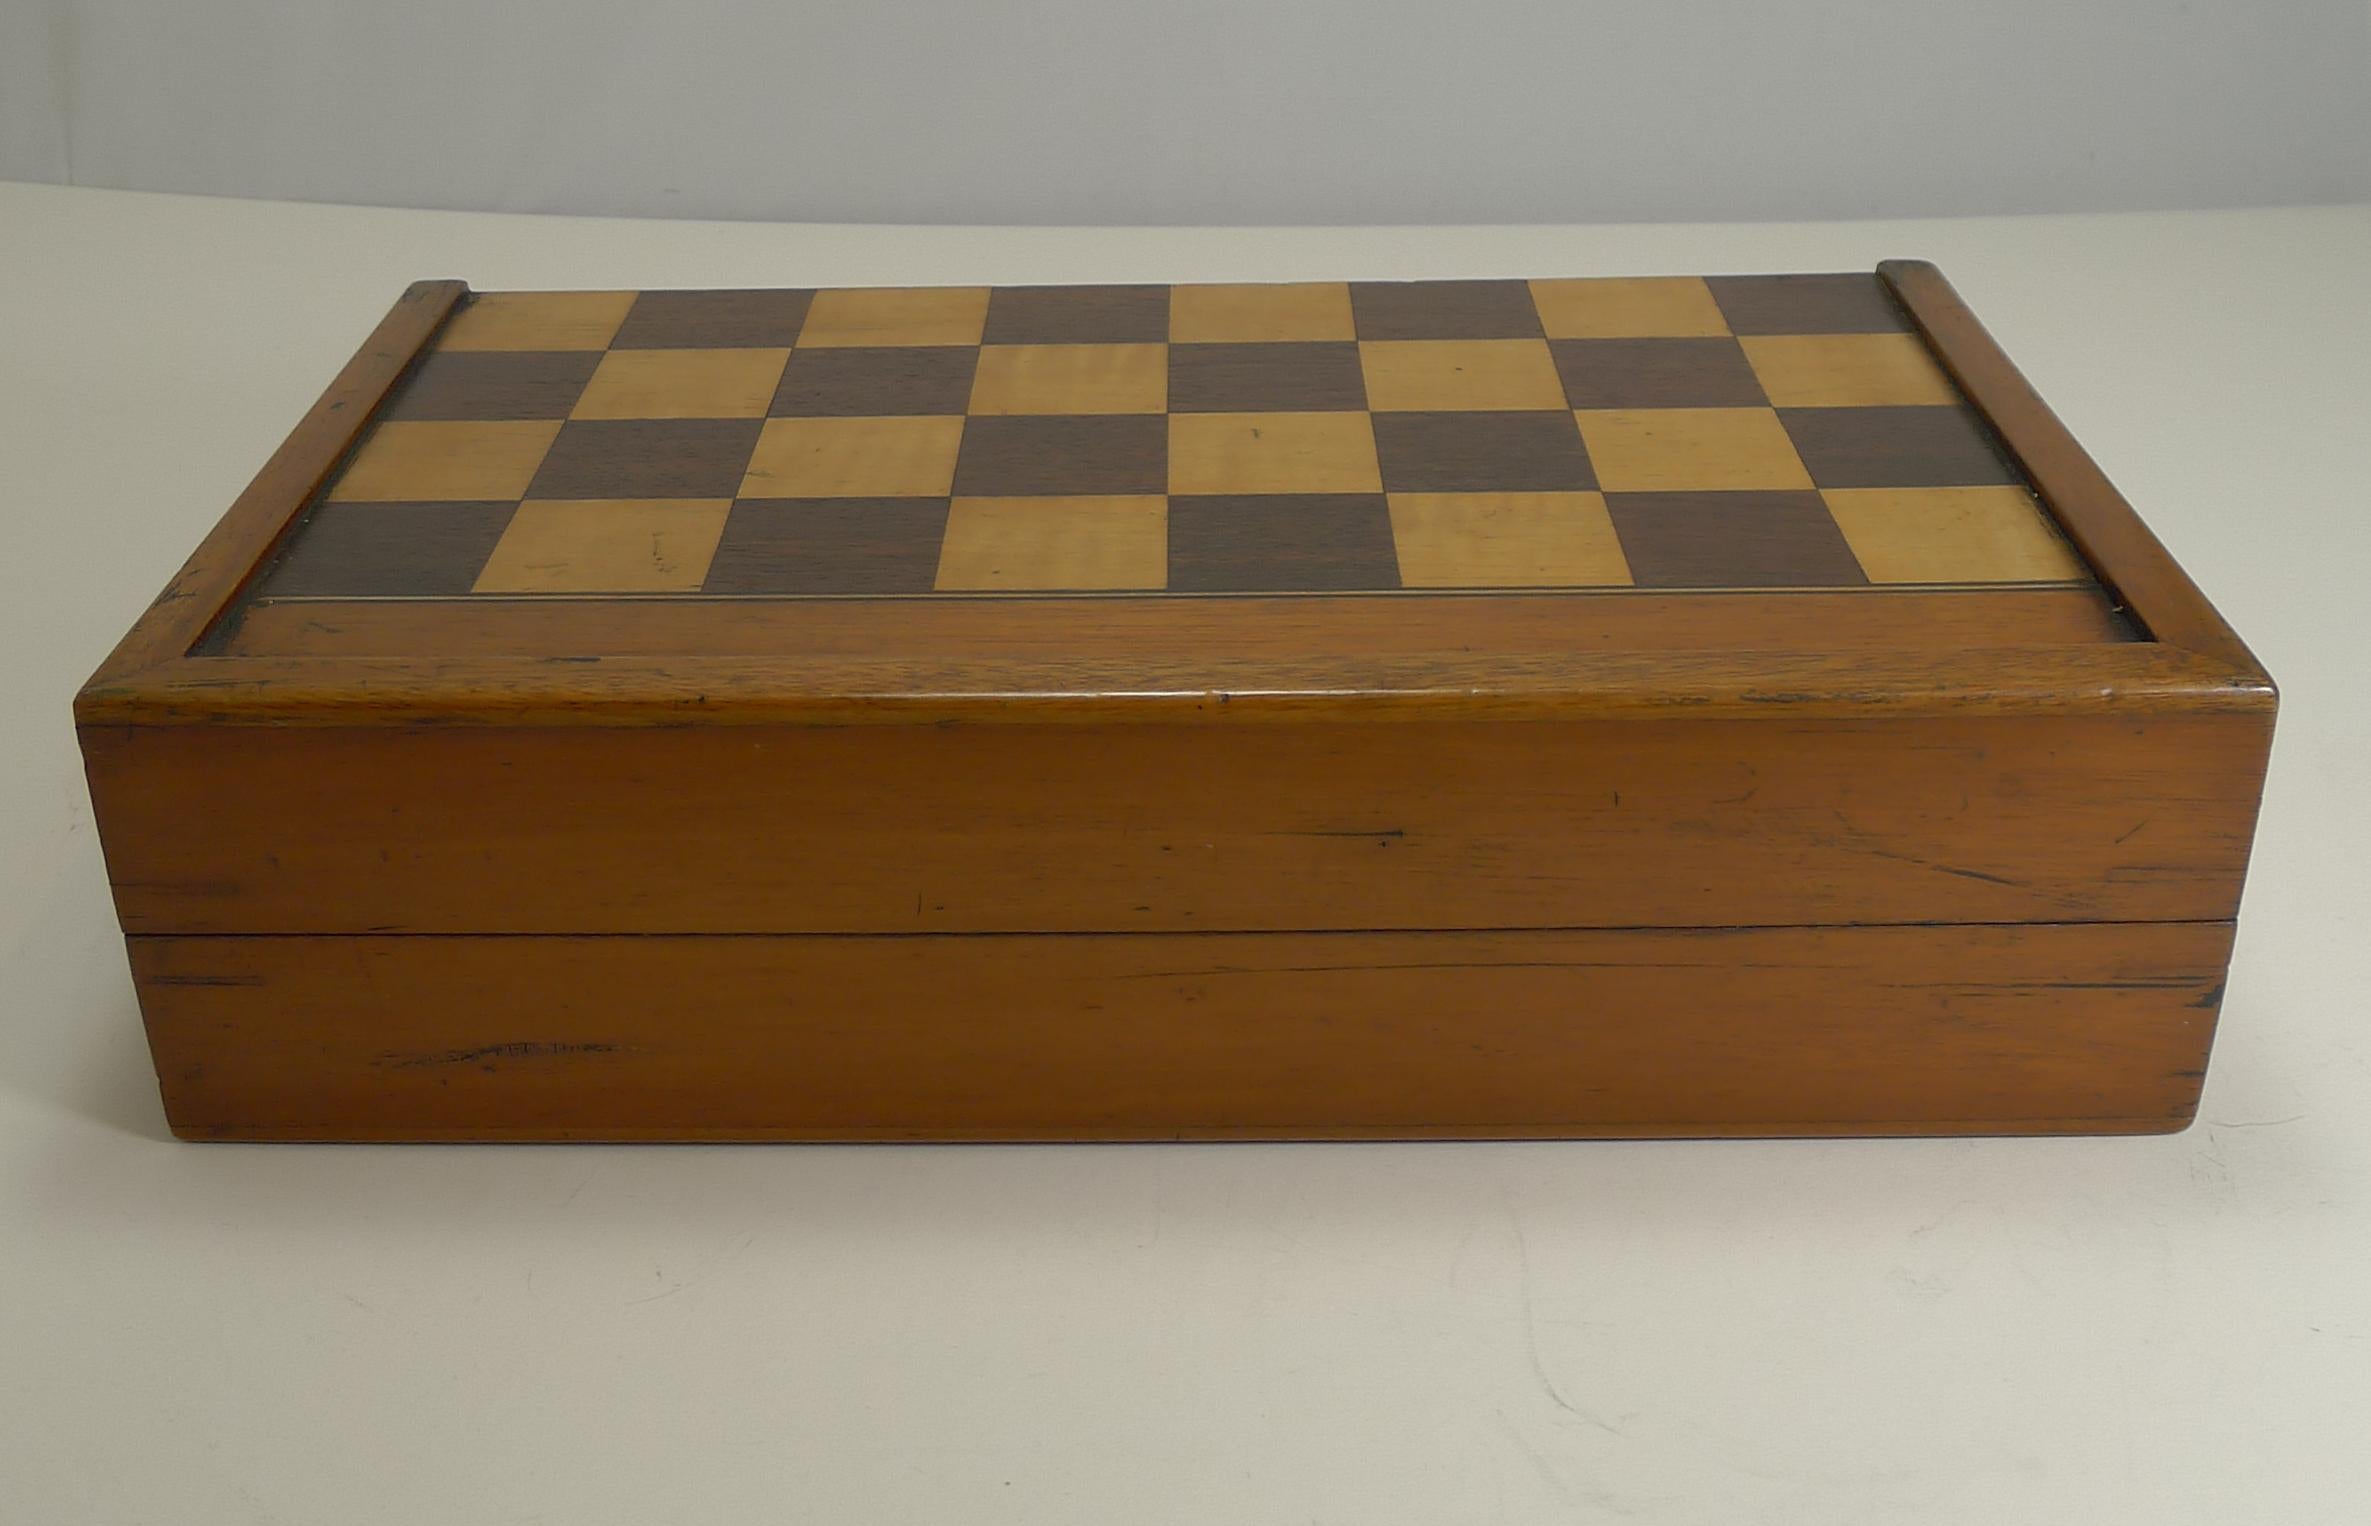 Late Victorian Antique English Folding Chess / Backgammon / Checkers Board, circa 1890-1900